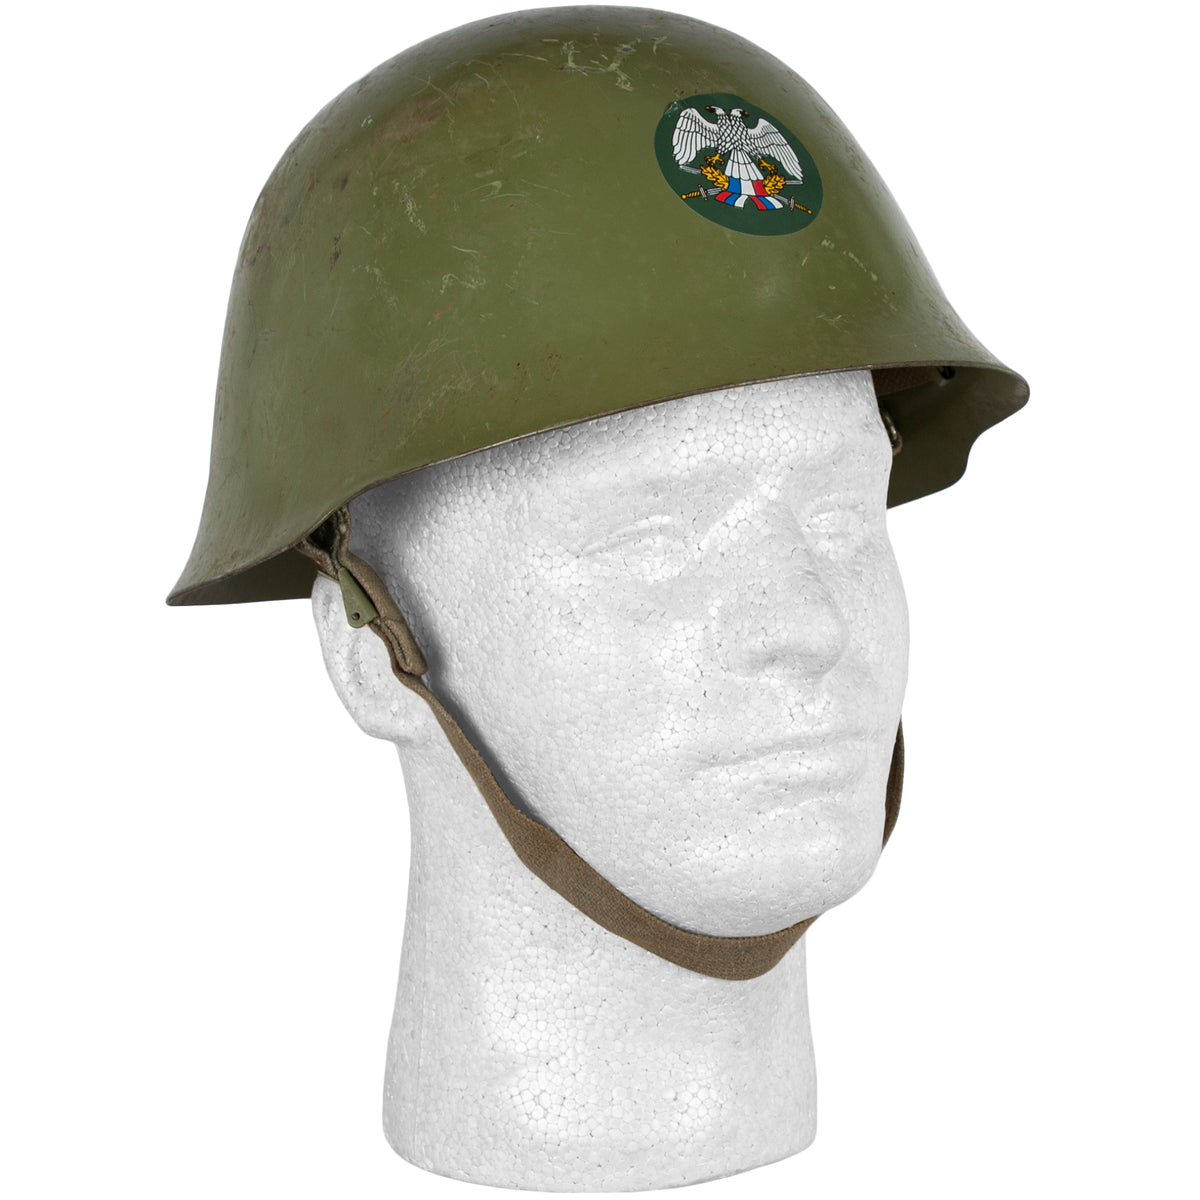 Serbian Paratrooper Helmet. 94-132